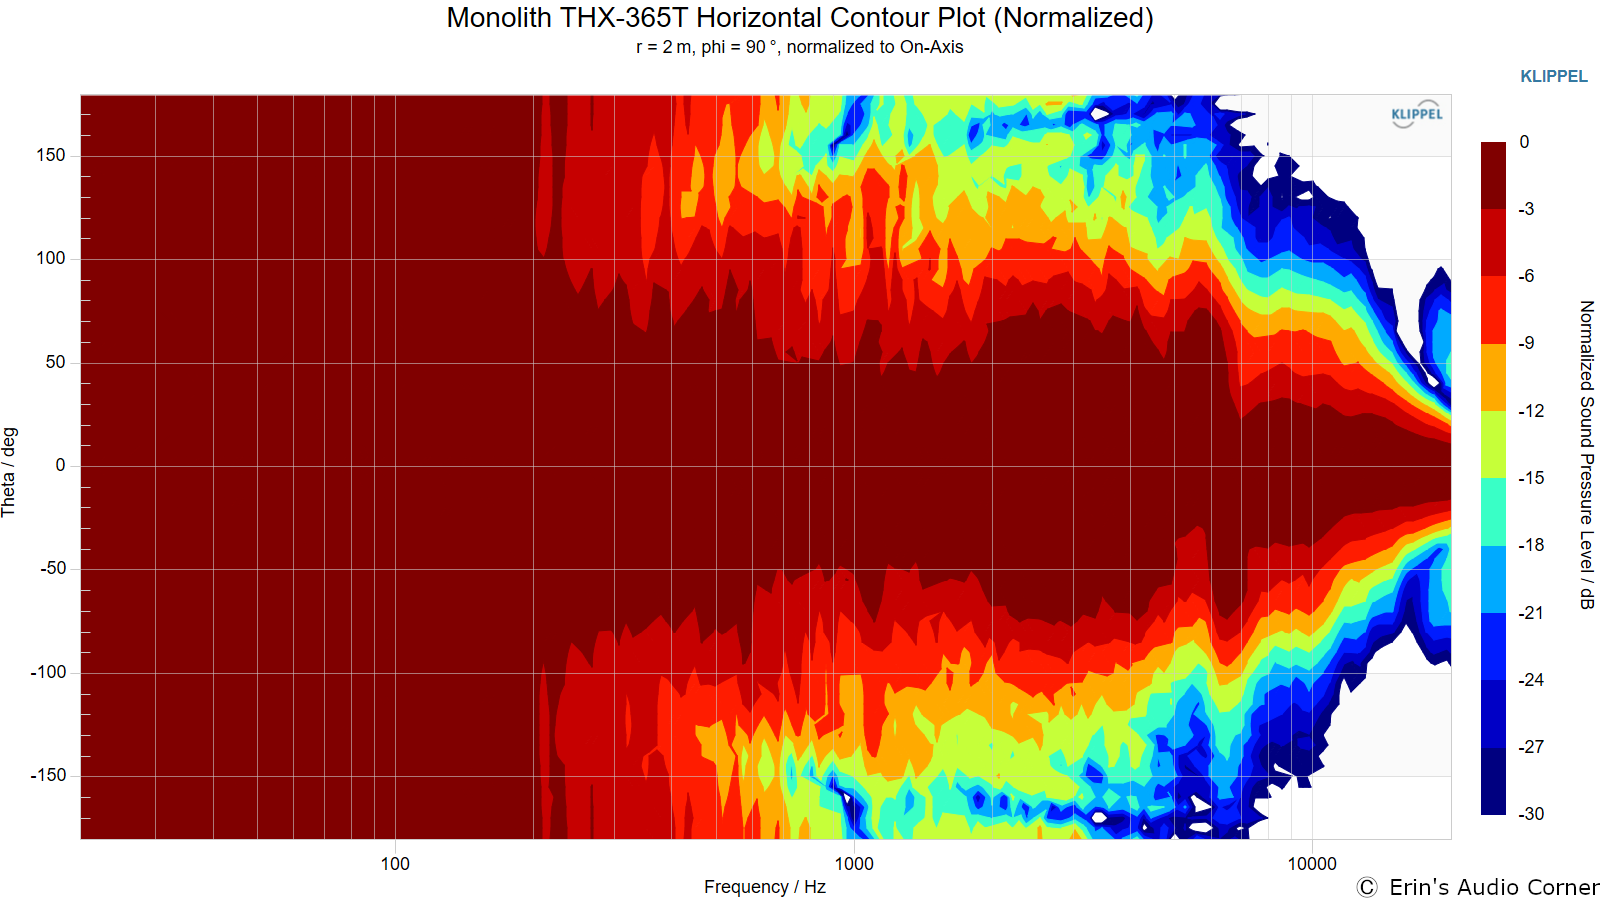 Monolith THX-365T Horizontal Contour Plot (Normalized).png